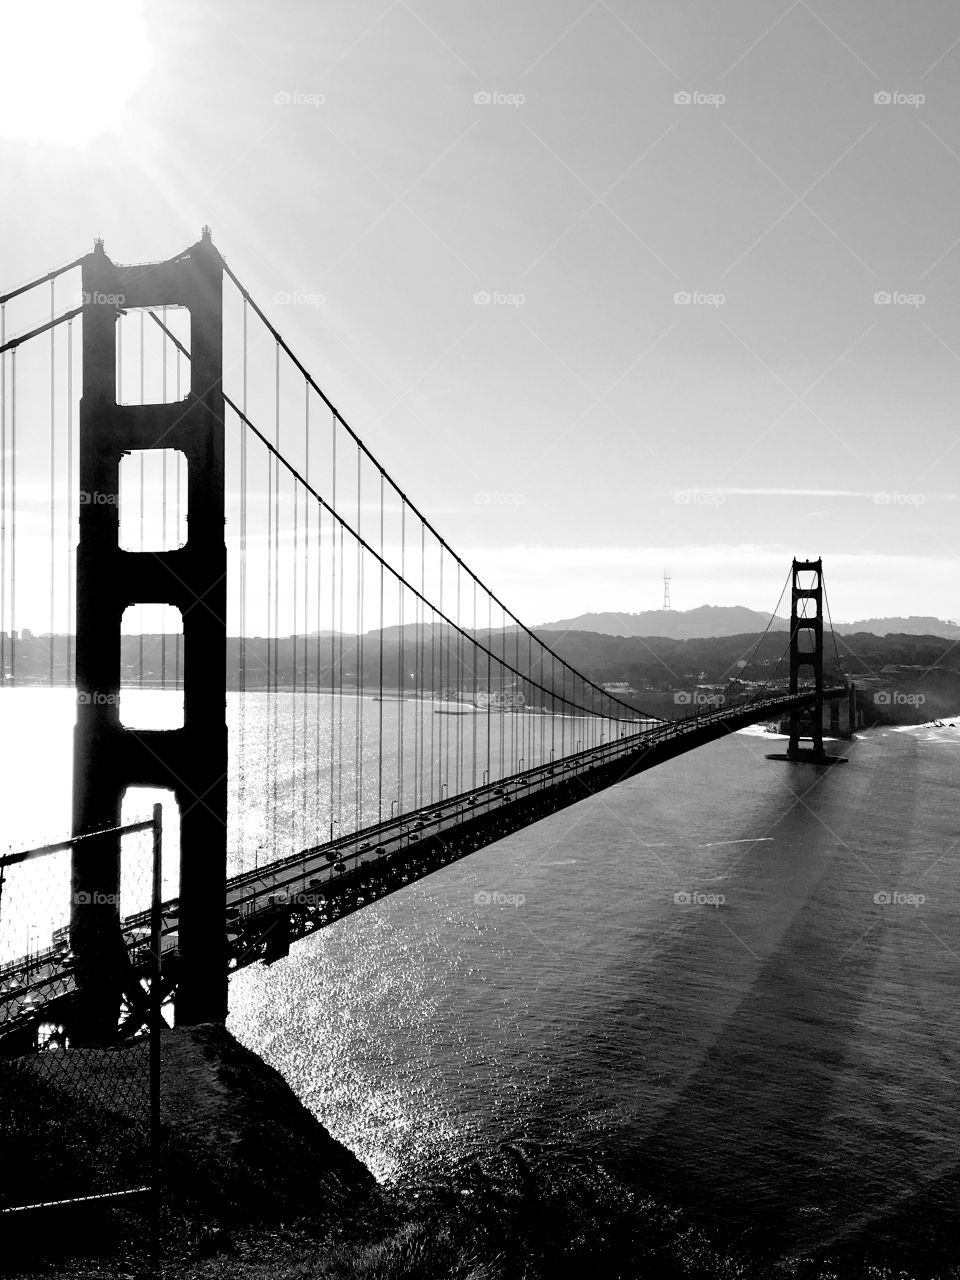 Golden Gate Bridge in San Fransisco, CA. Taken from Marin Headlands. 